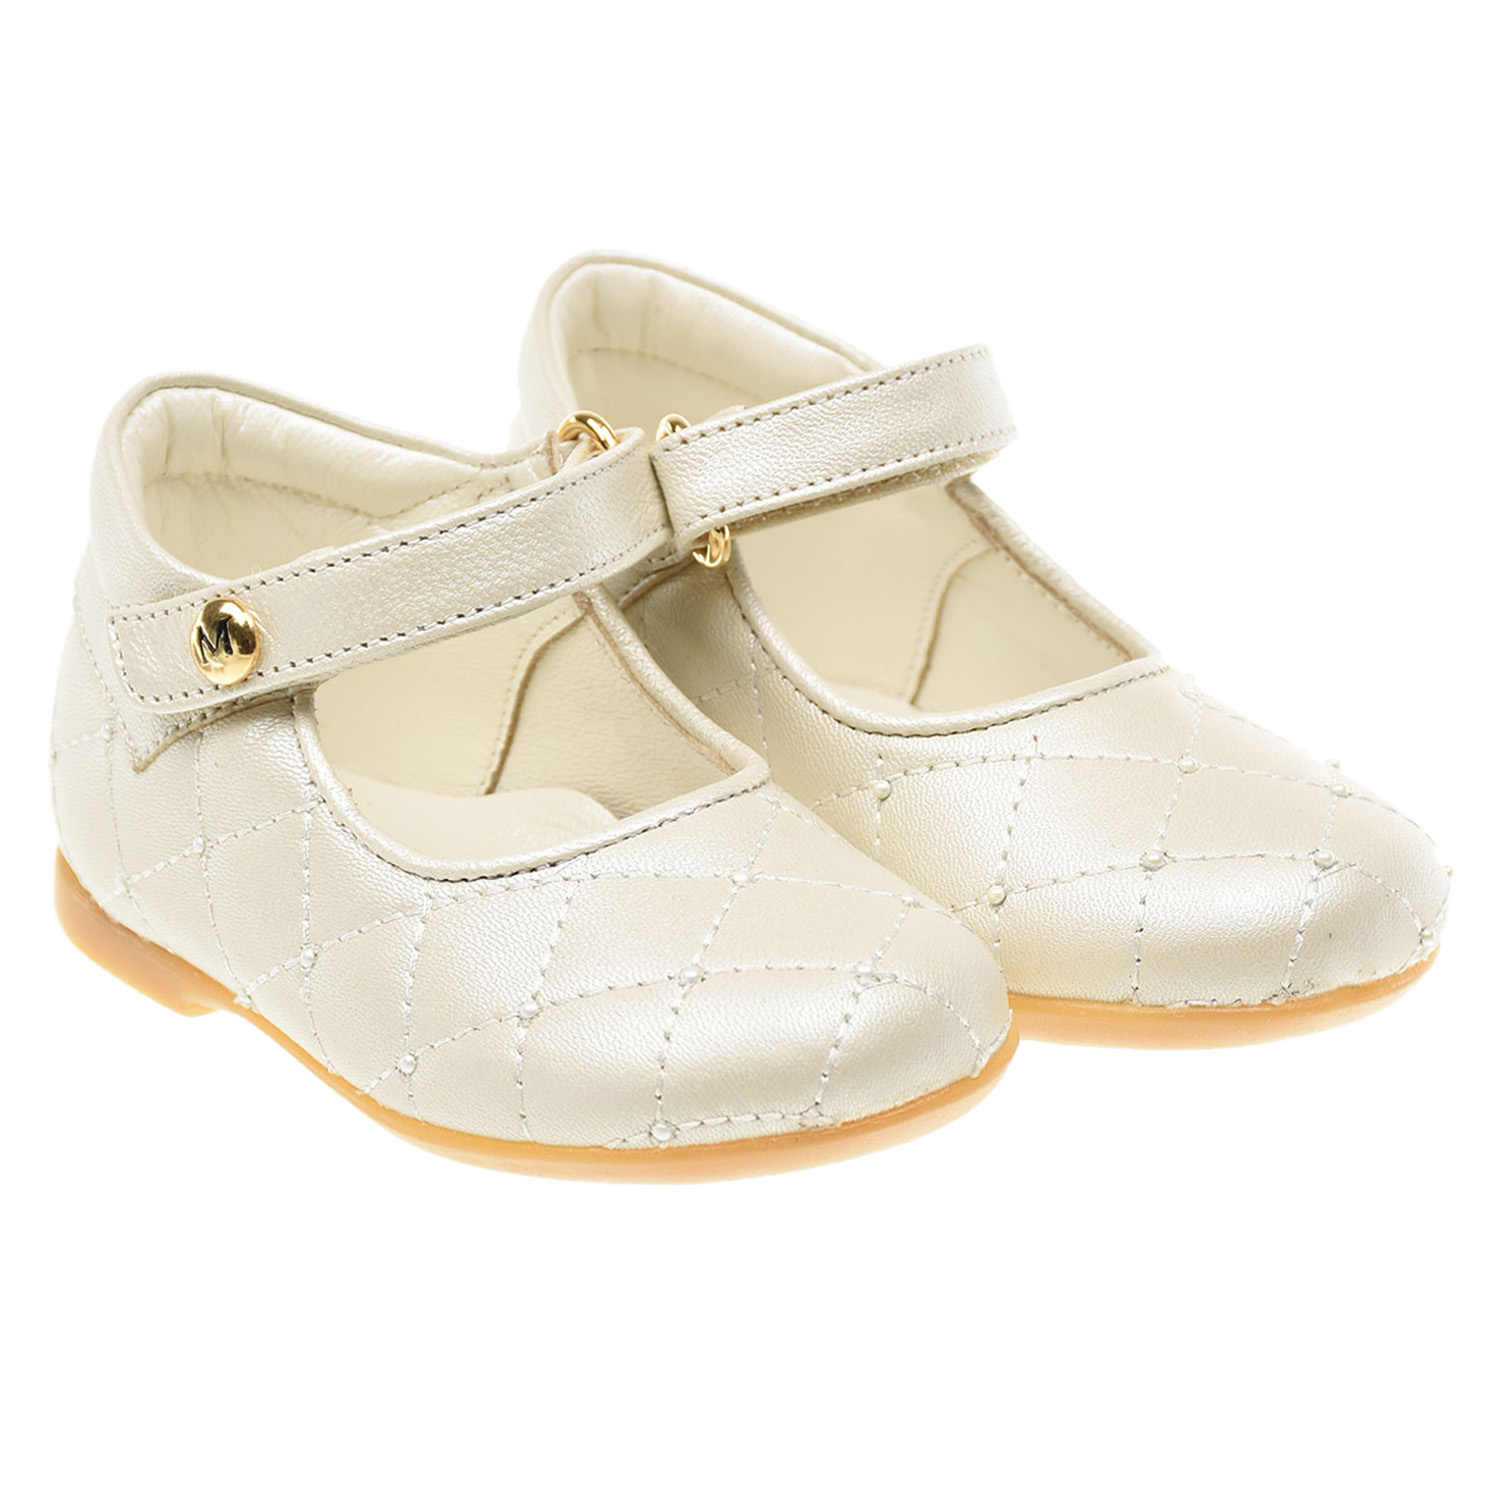 Кожаные туфли со стеганой отделкой Missouri детские, размер 19, цвет кремовый - фото 1